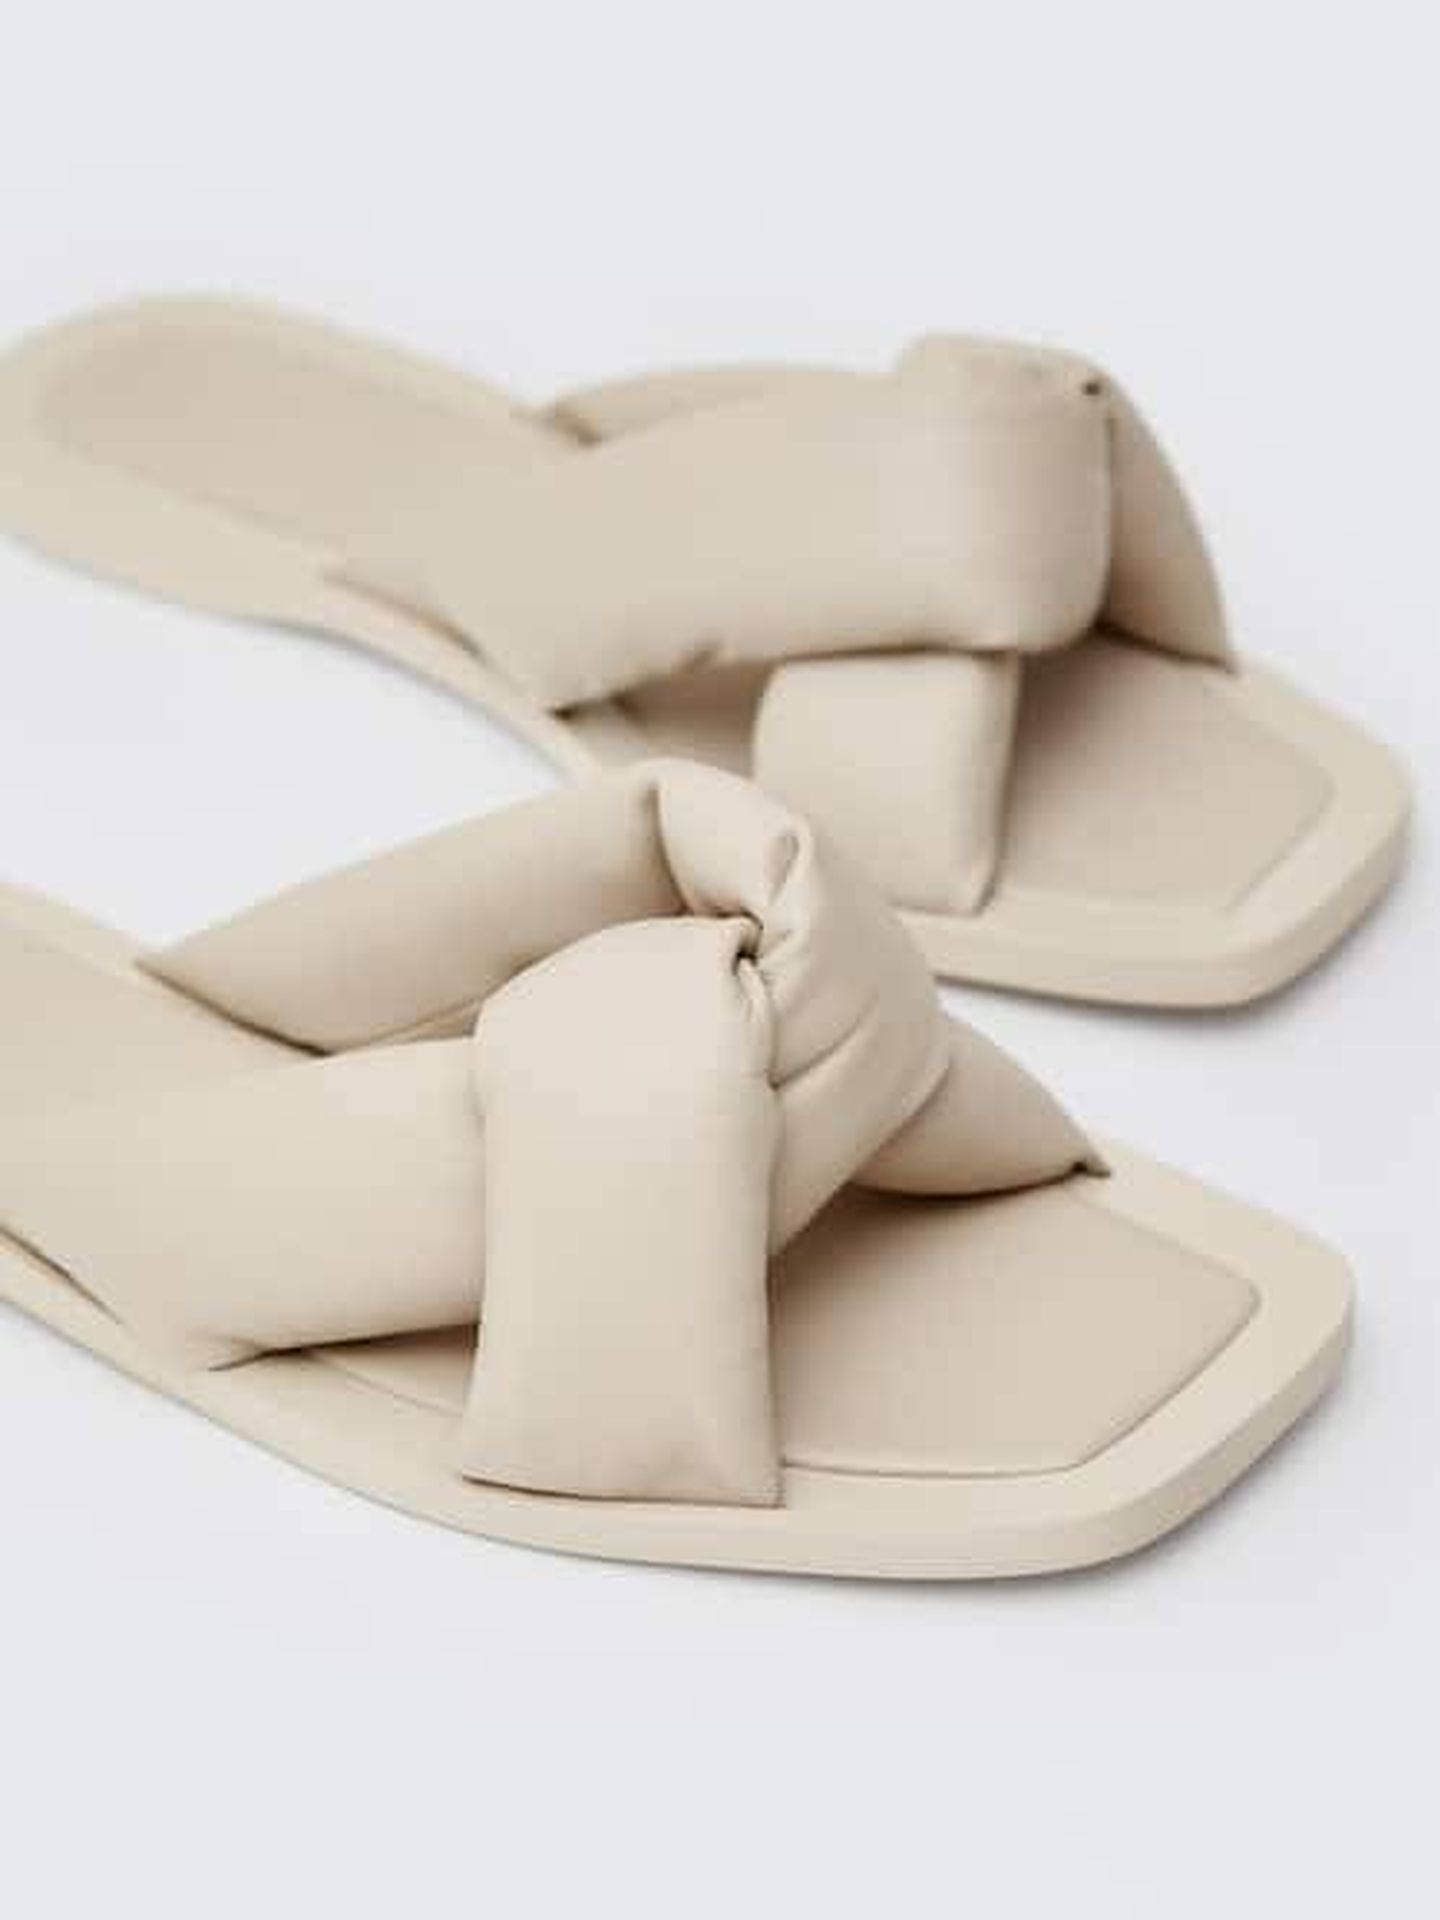 Las sandalias planas de Massimo Dutti récords ventas